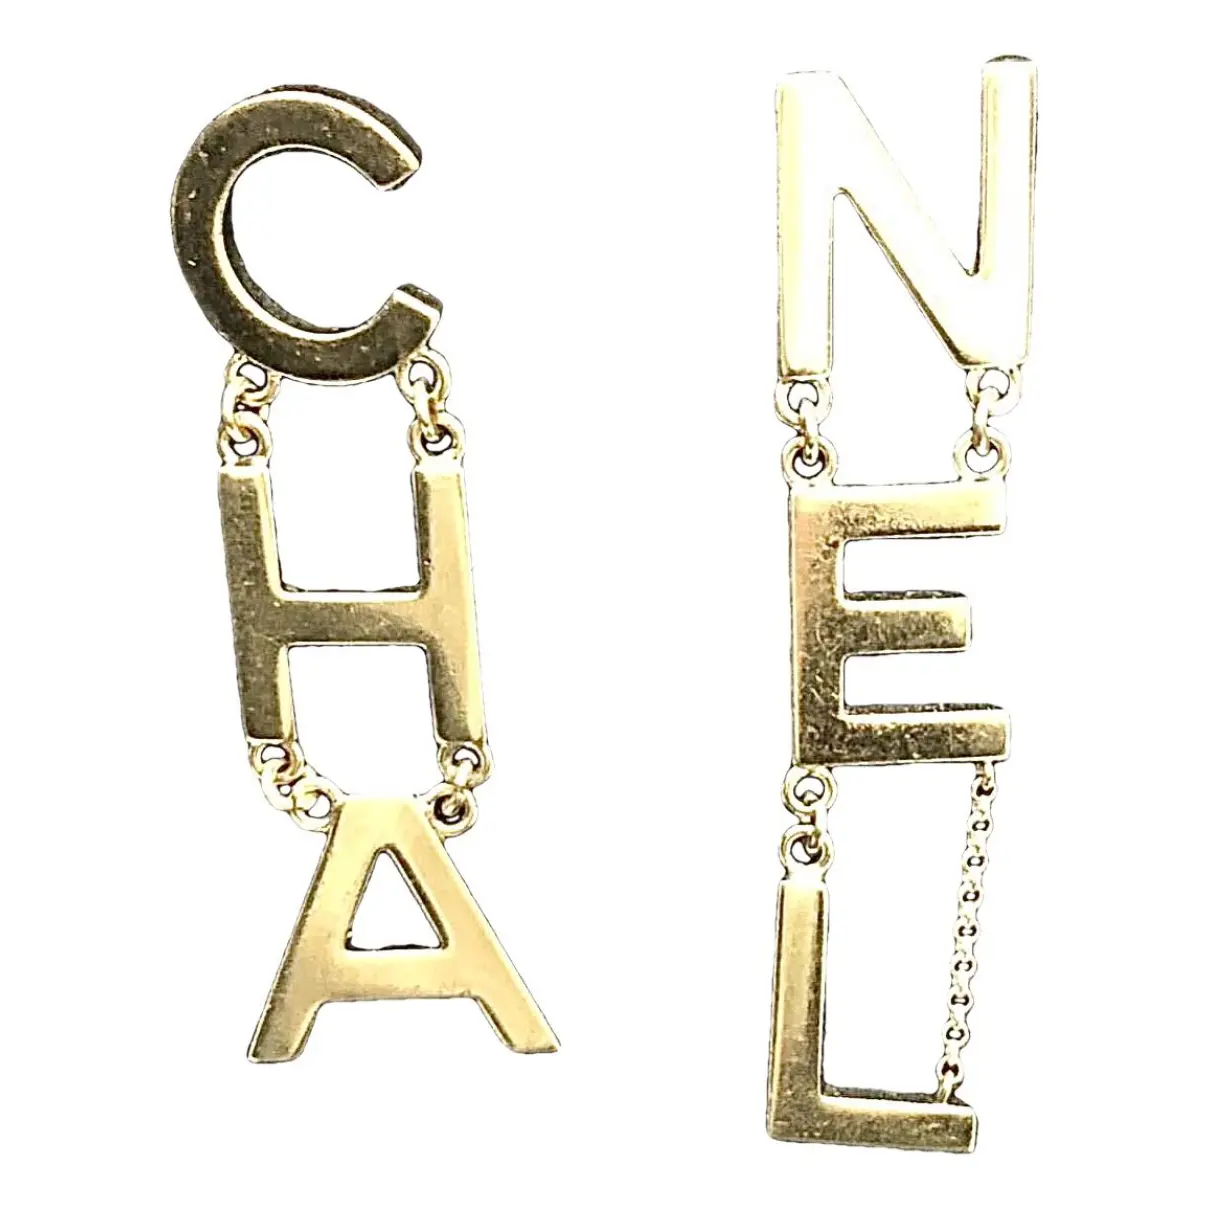 CHANEL earrings